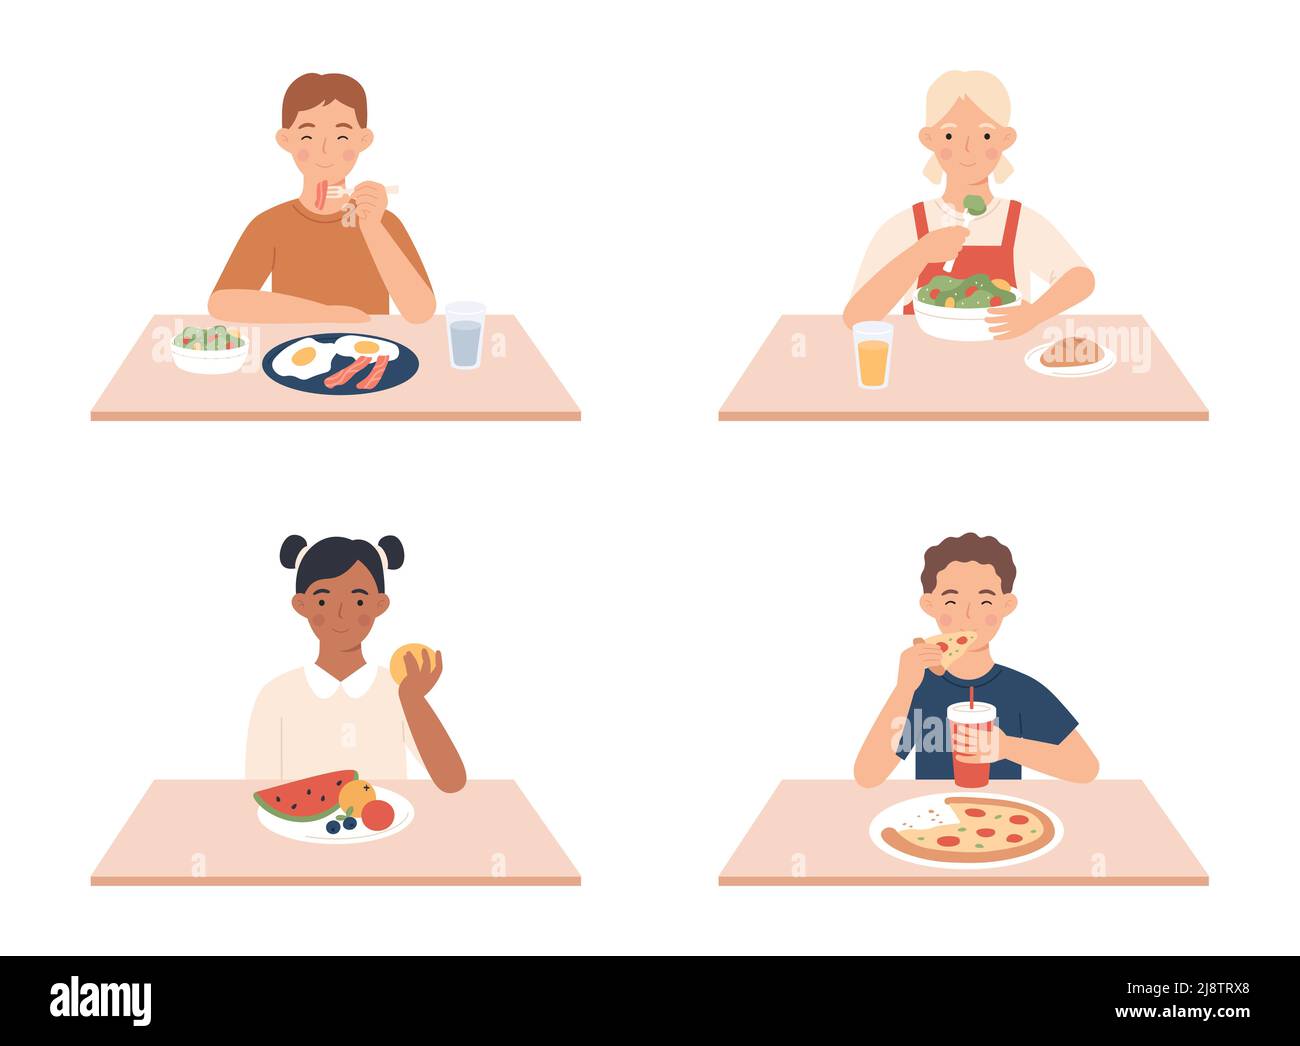 Kinder essen. Jungen und Mädchen sitzen am Tisch und frühstücken. Glückliche, kleine weibliche und männliche Charaktere, die verschiedene Speisen essen Stock Vektor